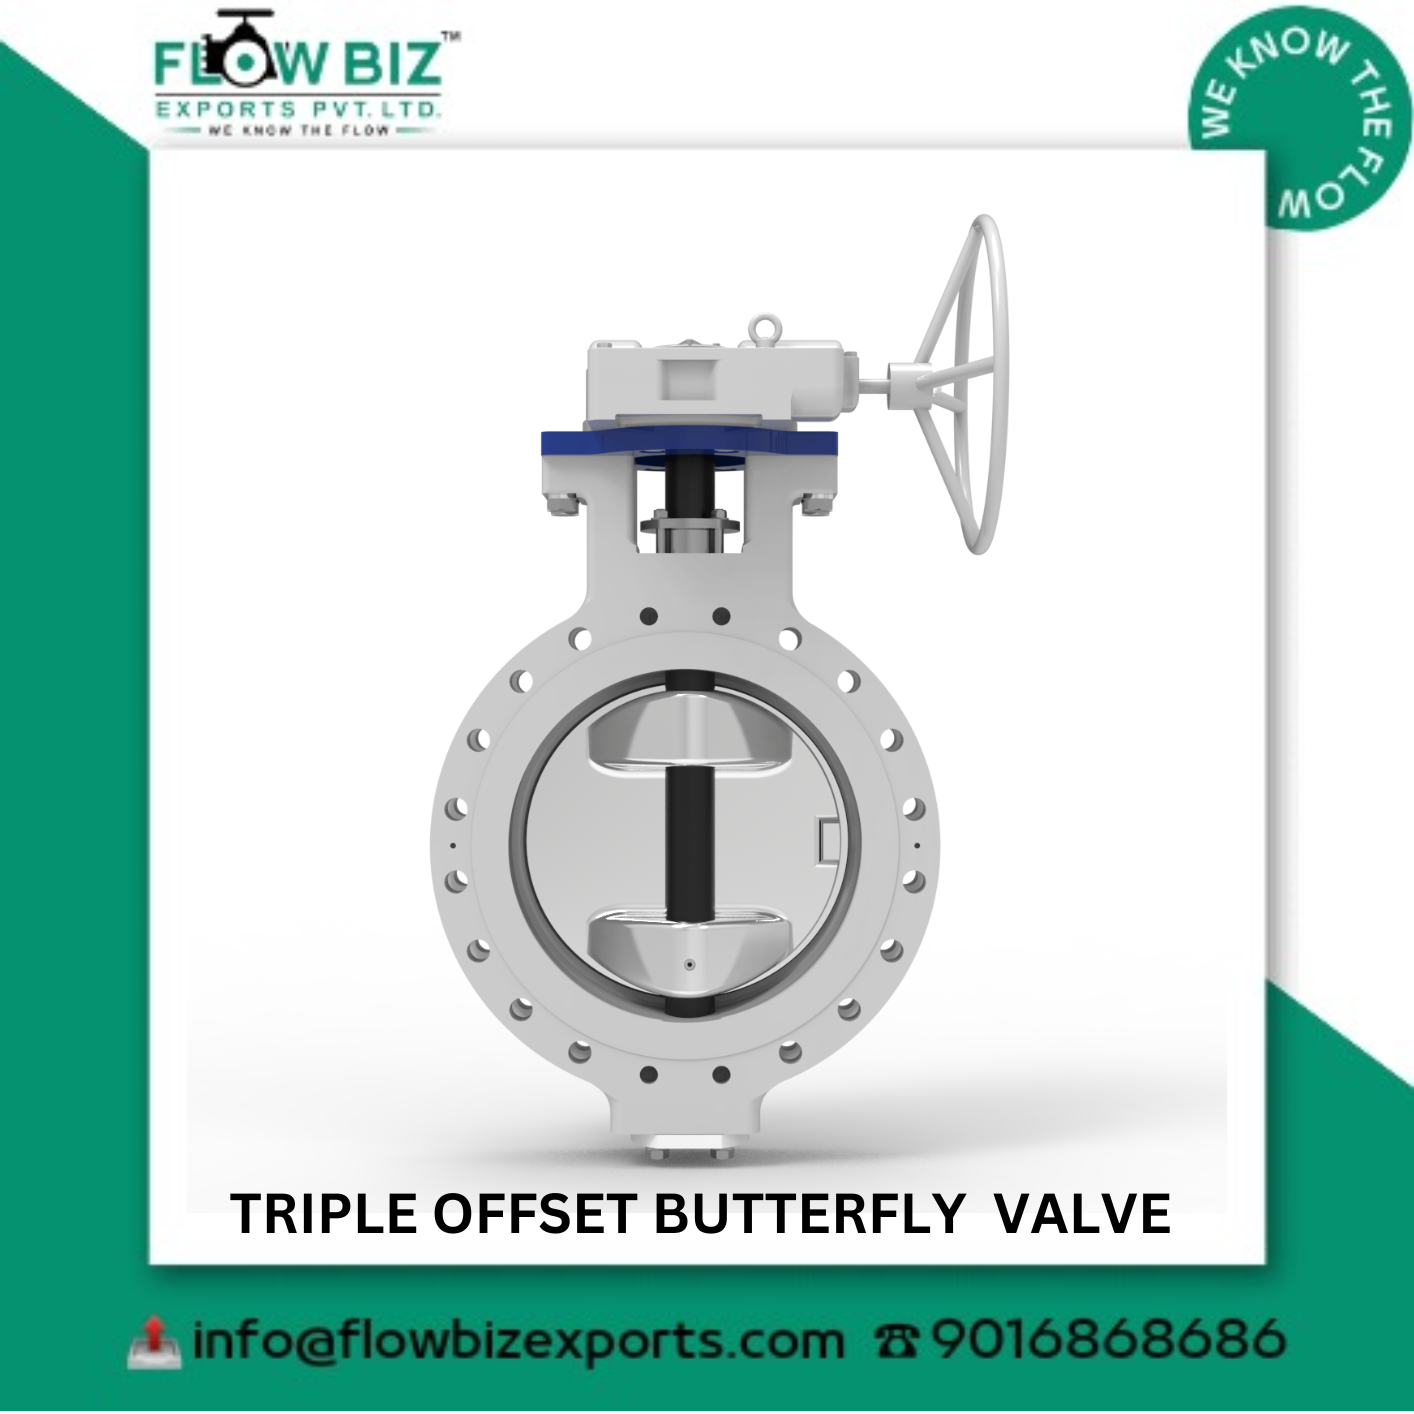 triple offset butterfly valve manufacturer ahmedabad -Flowbiz